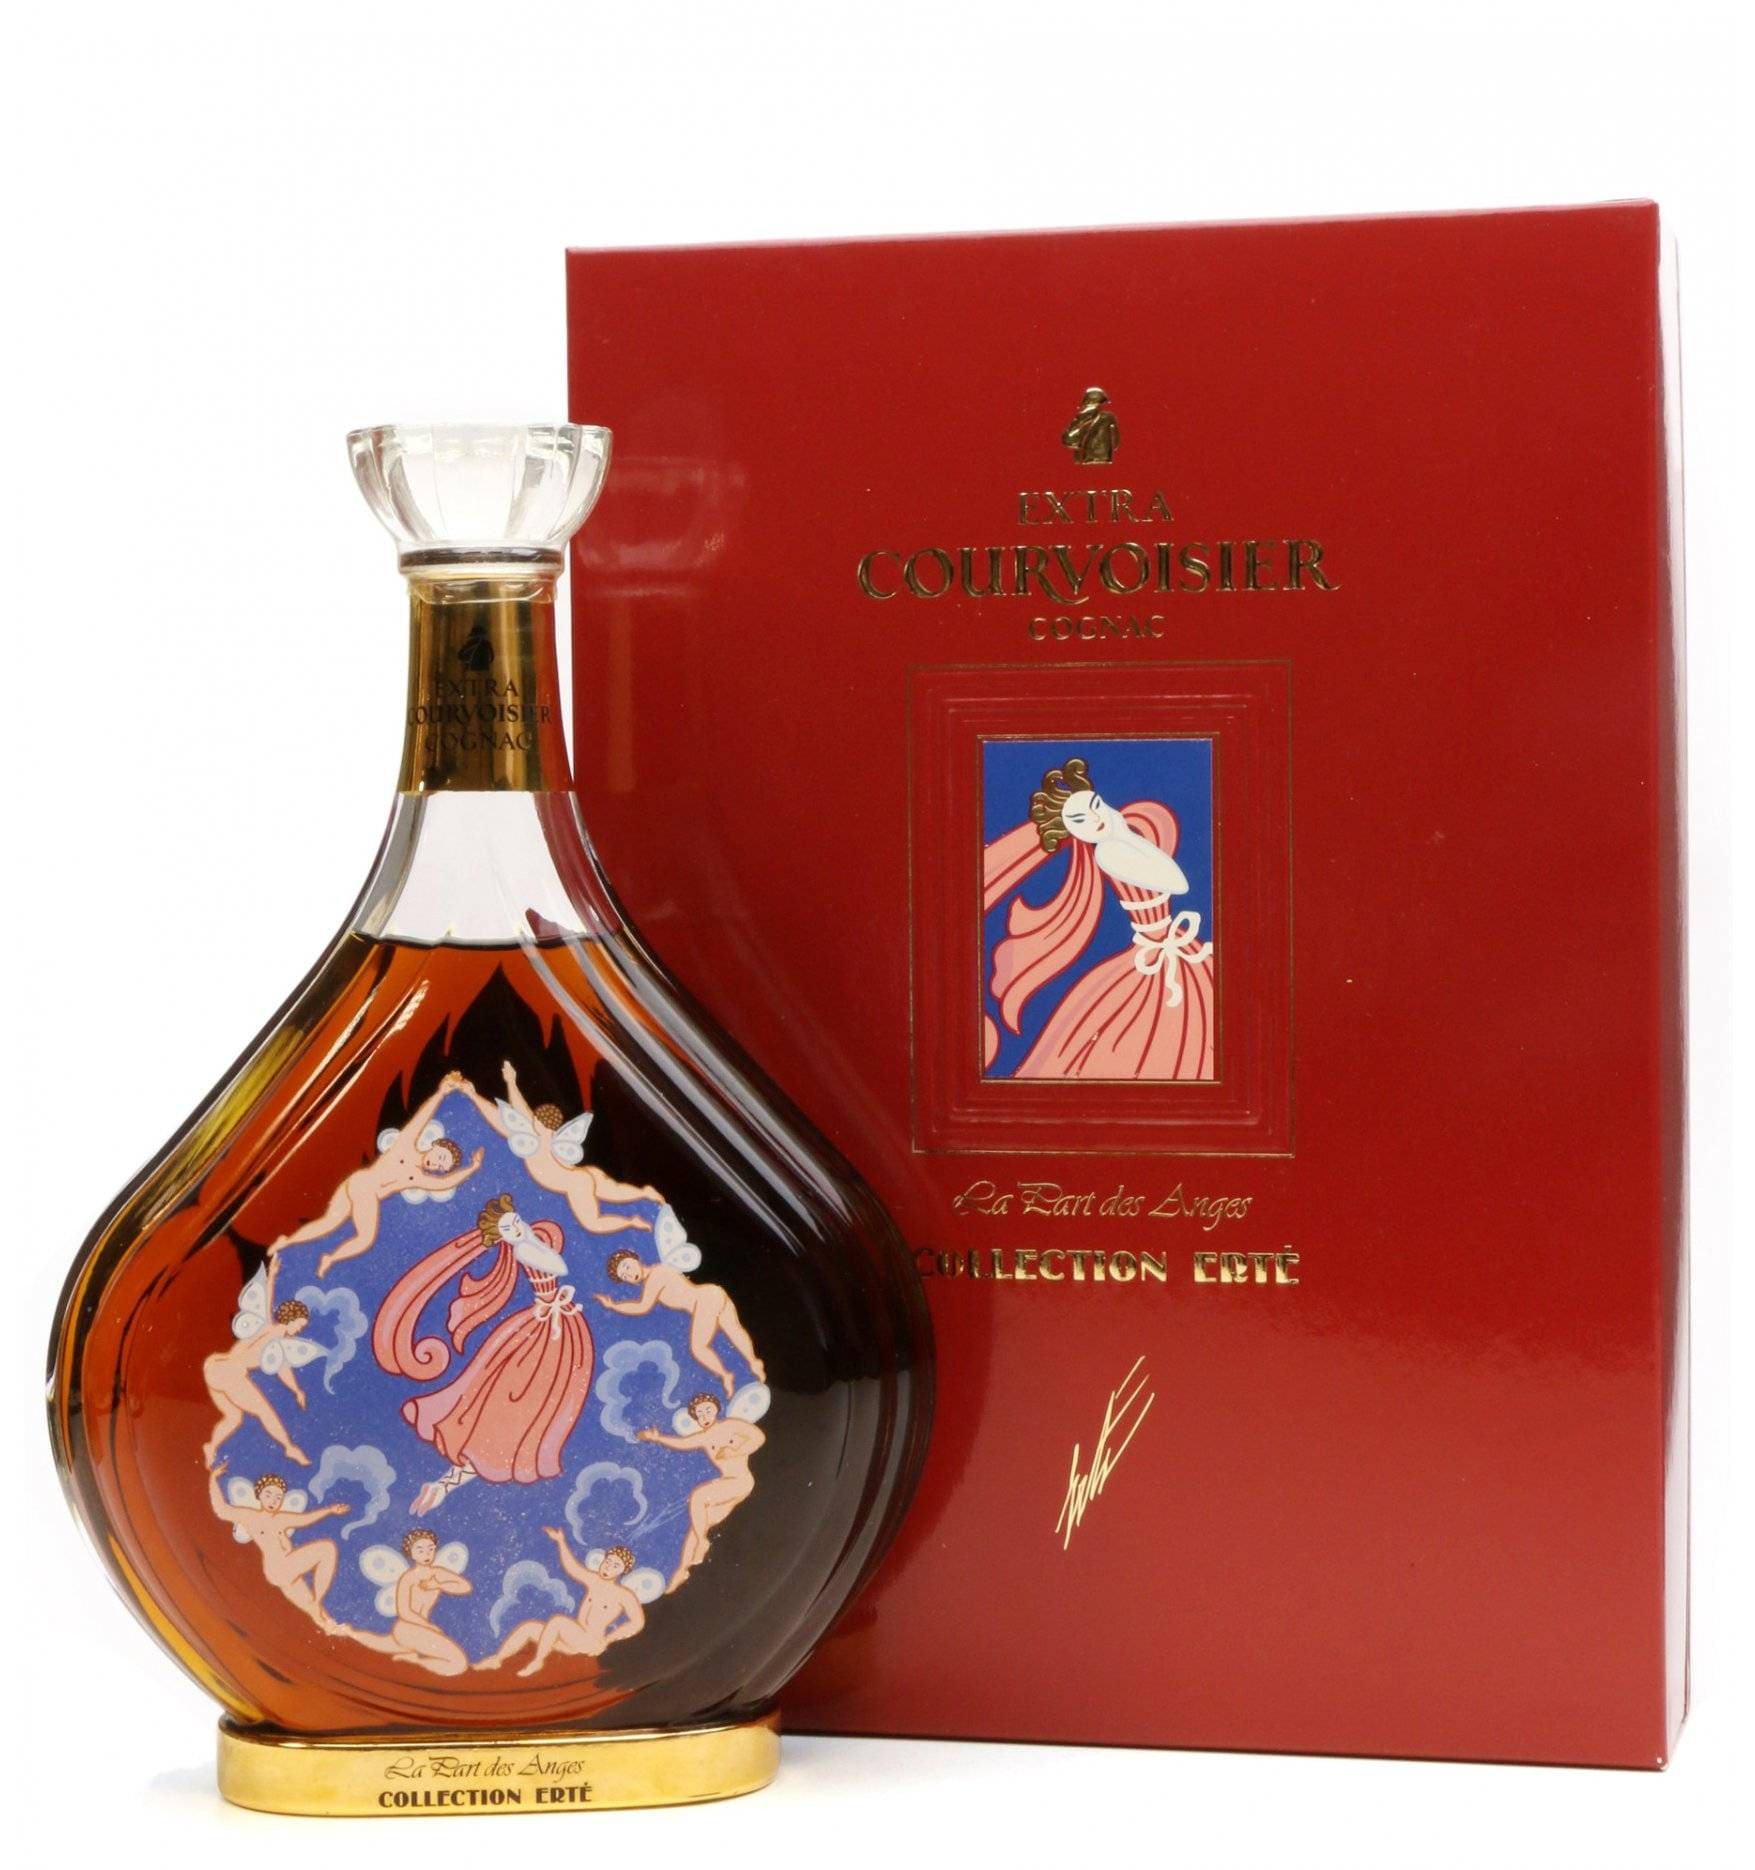 Courvoisier Erte No.7 Part des Anges Cognac - A Collector's Dream